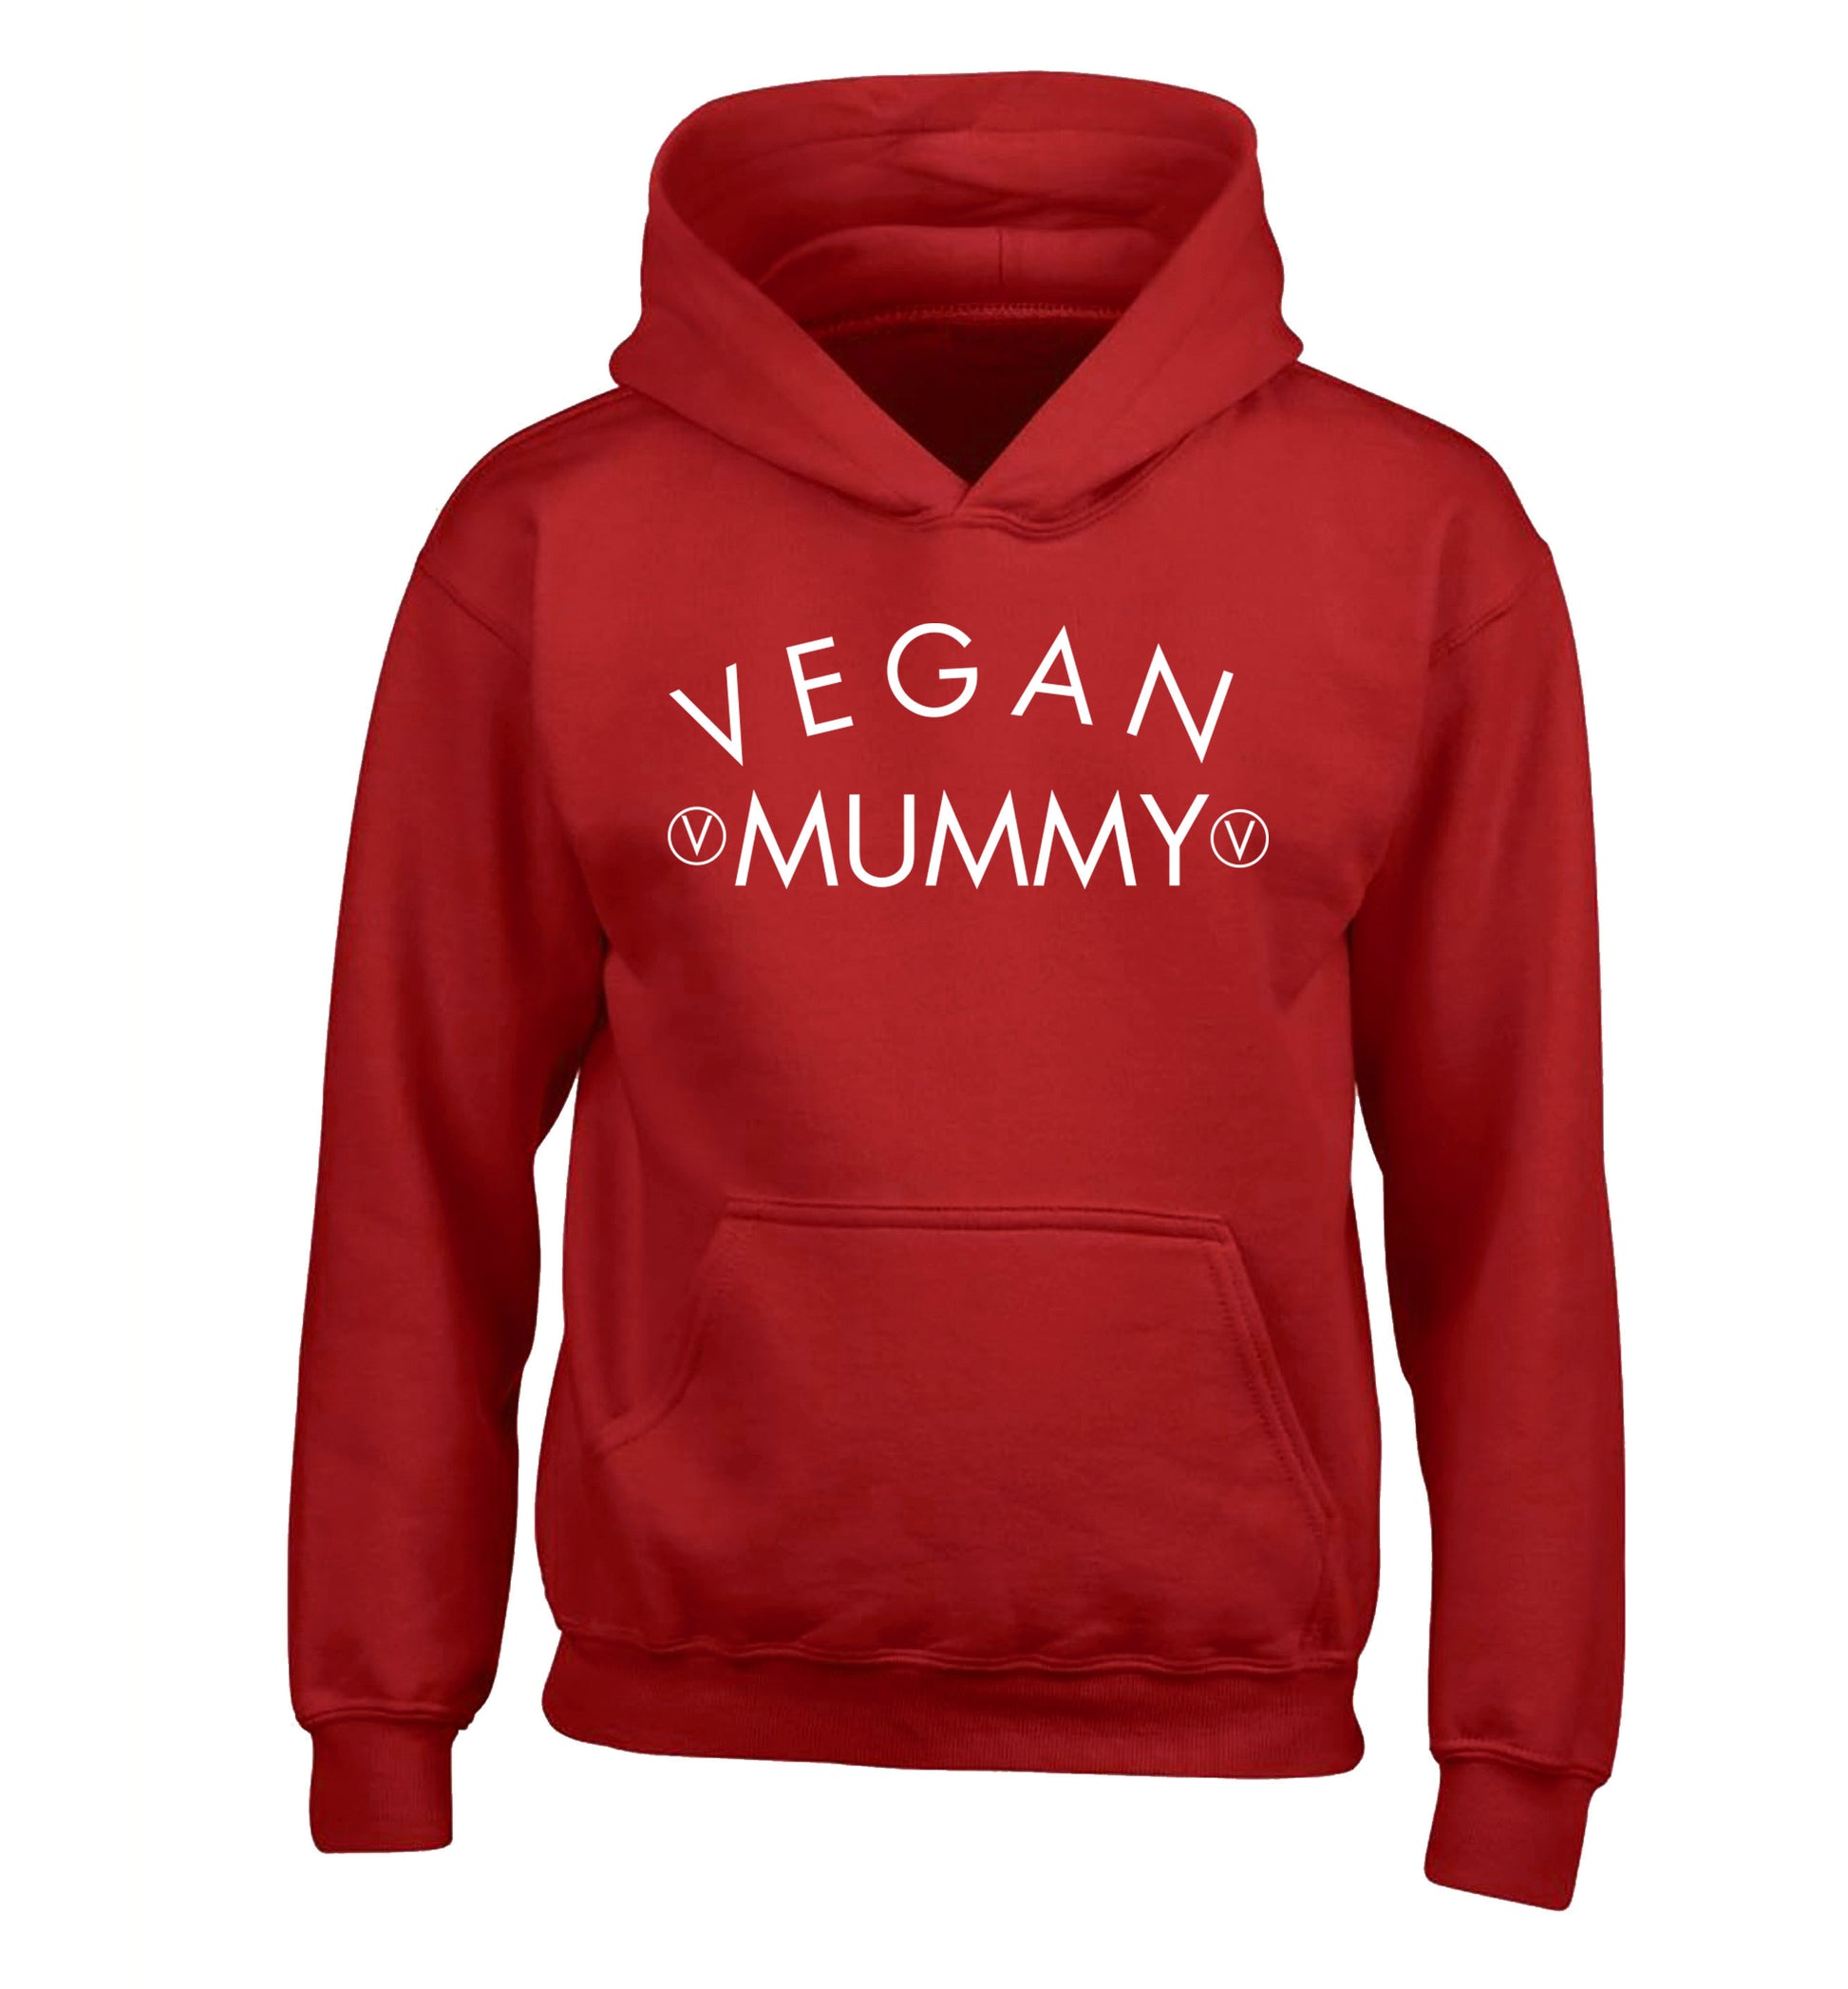 Vegan mummy children's red hoodie 12-14 Years